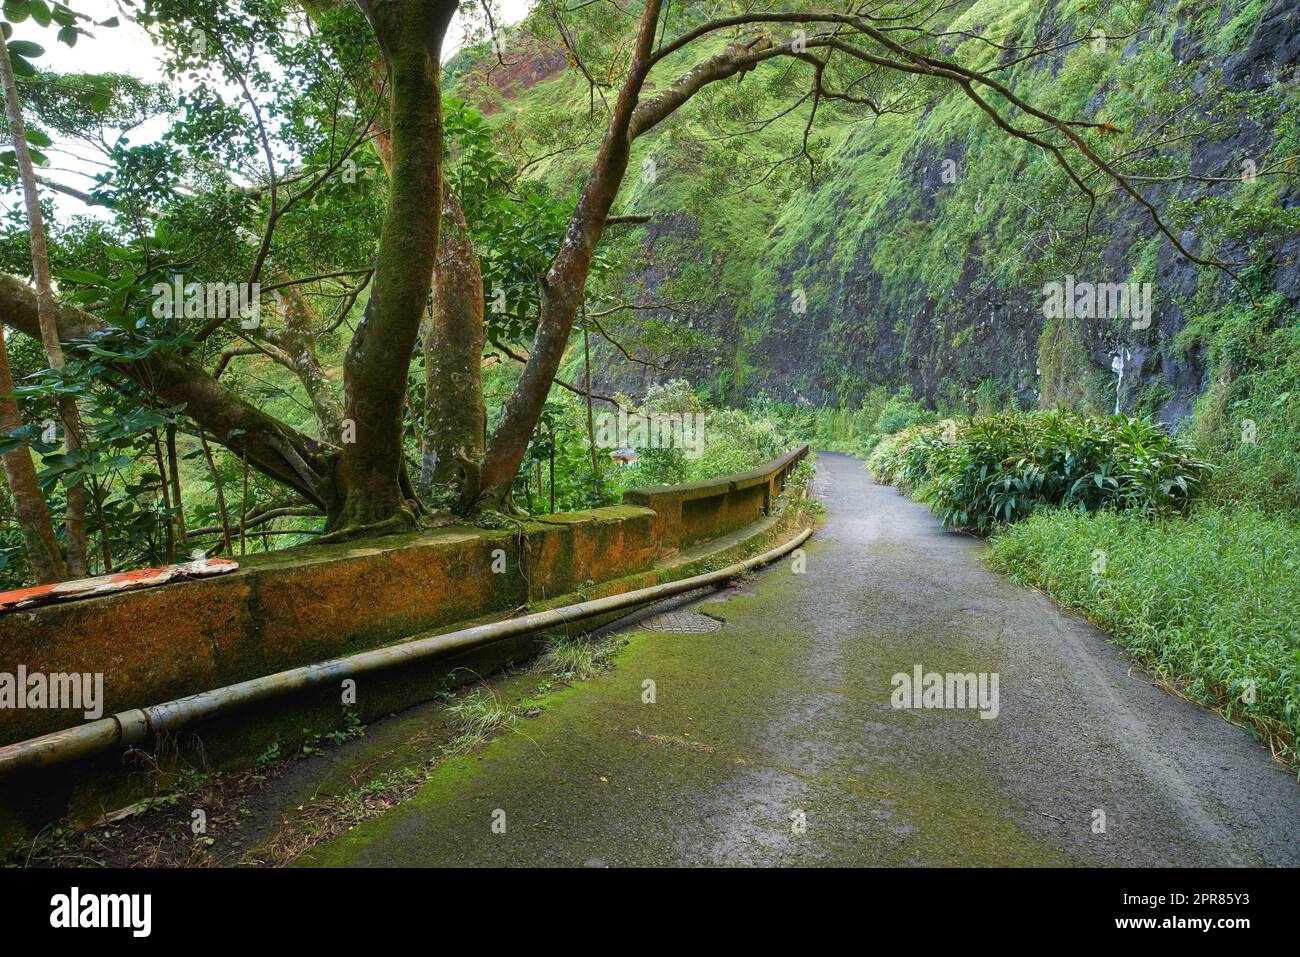 Verlassene Bergstraße in einem Regenwald. Einheimische Wälder von Oahu in der Nähe des alten Pali Highway Crossing in Hawaii. Überwucherte Wildnis in einer geheimnisvollen Landschaft. Verborgene Wunder auf dem Wanderweg Stockfoto